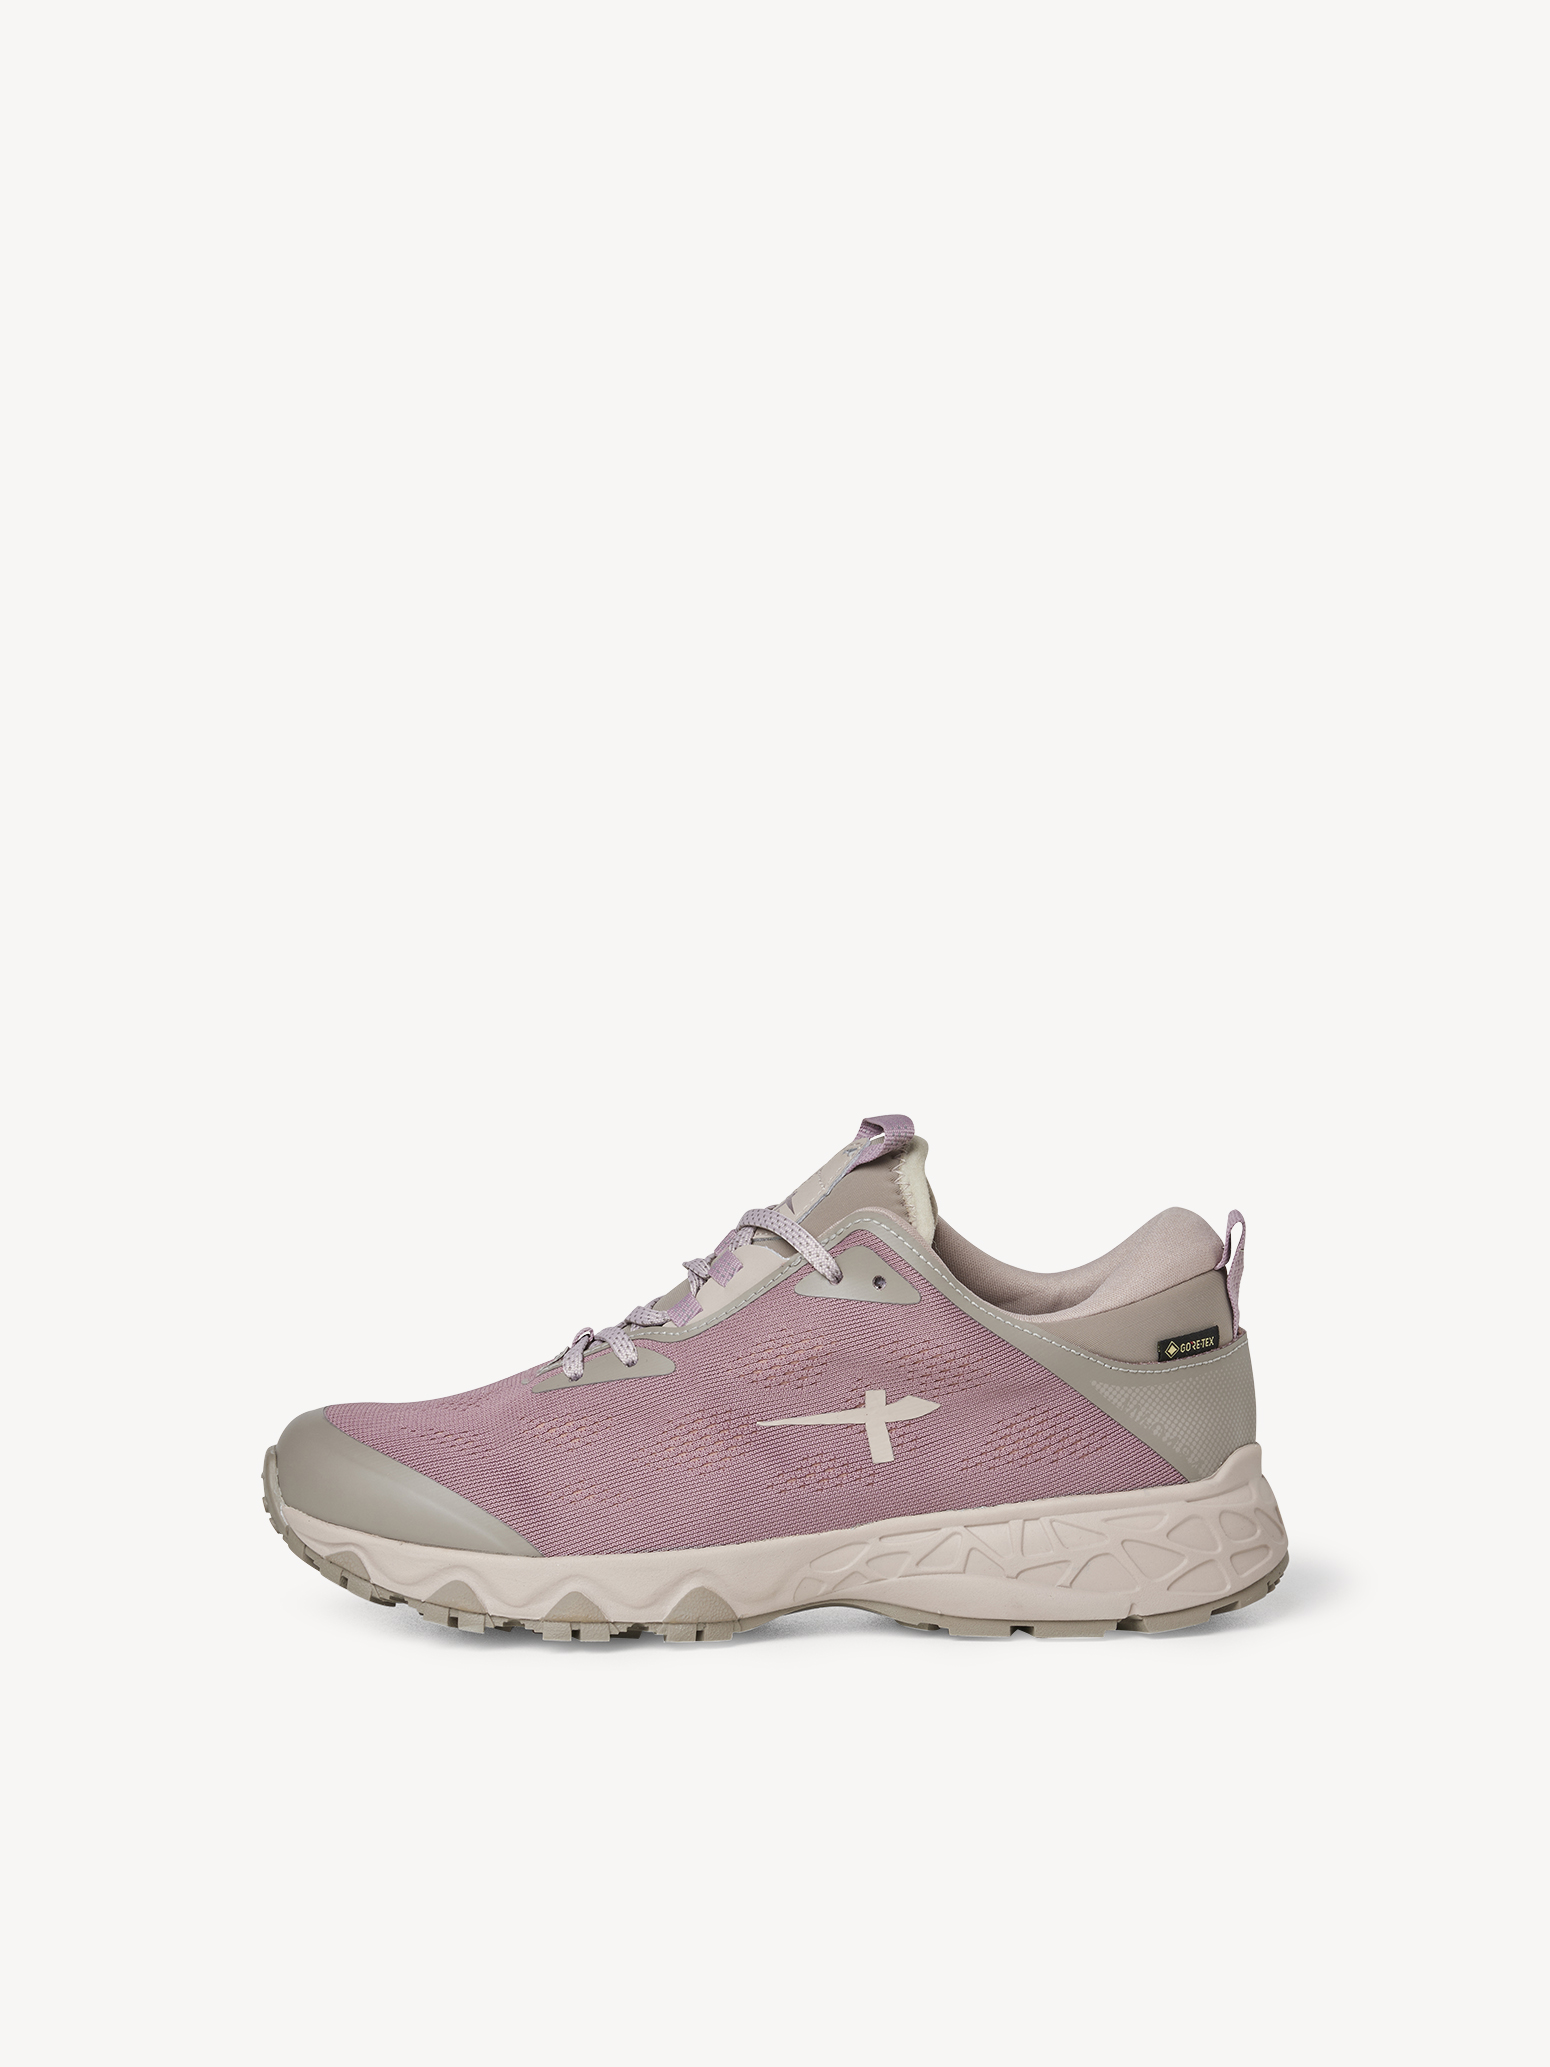 GORE-TEX Turistická obuv W-0484 - růžová